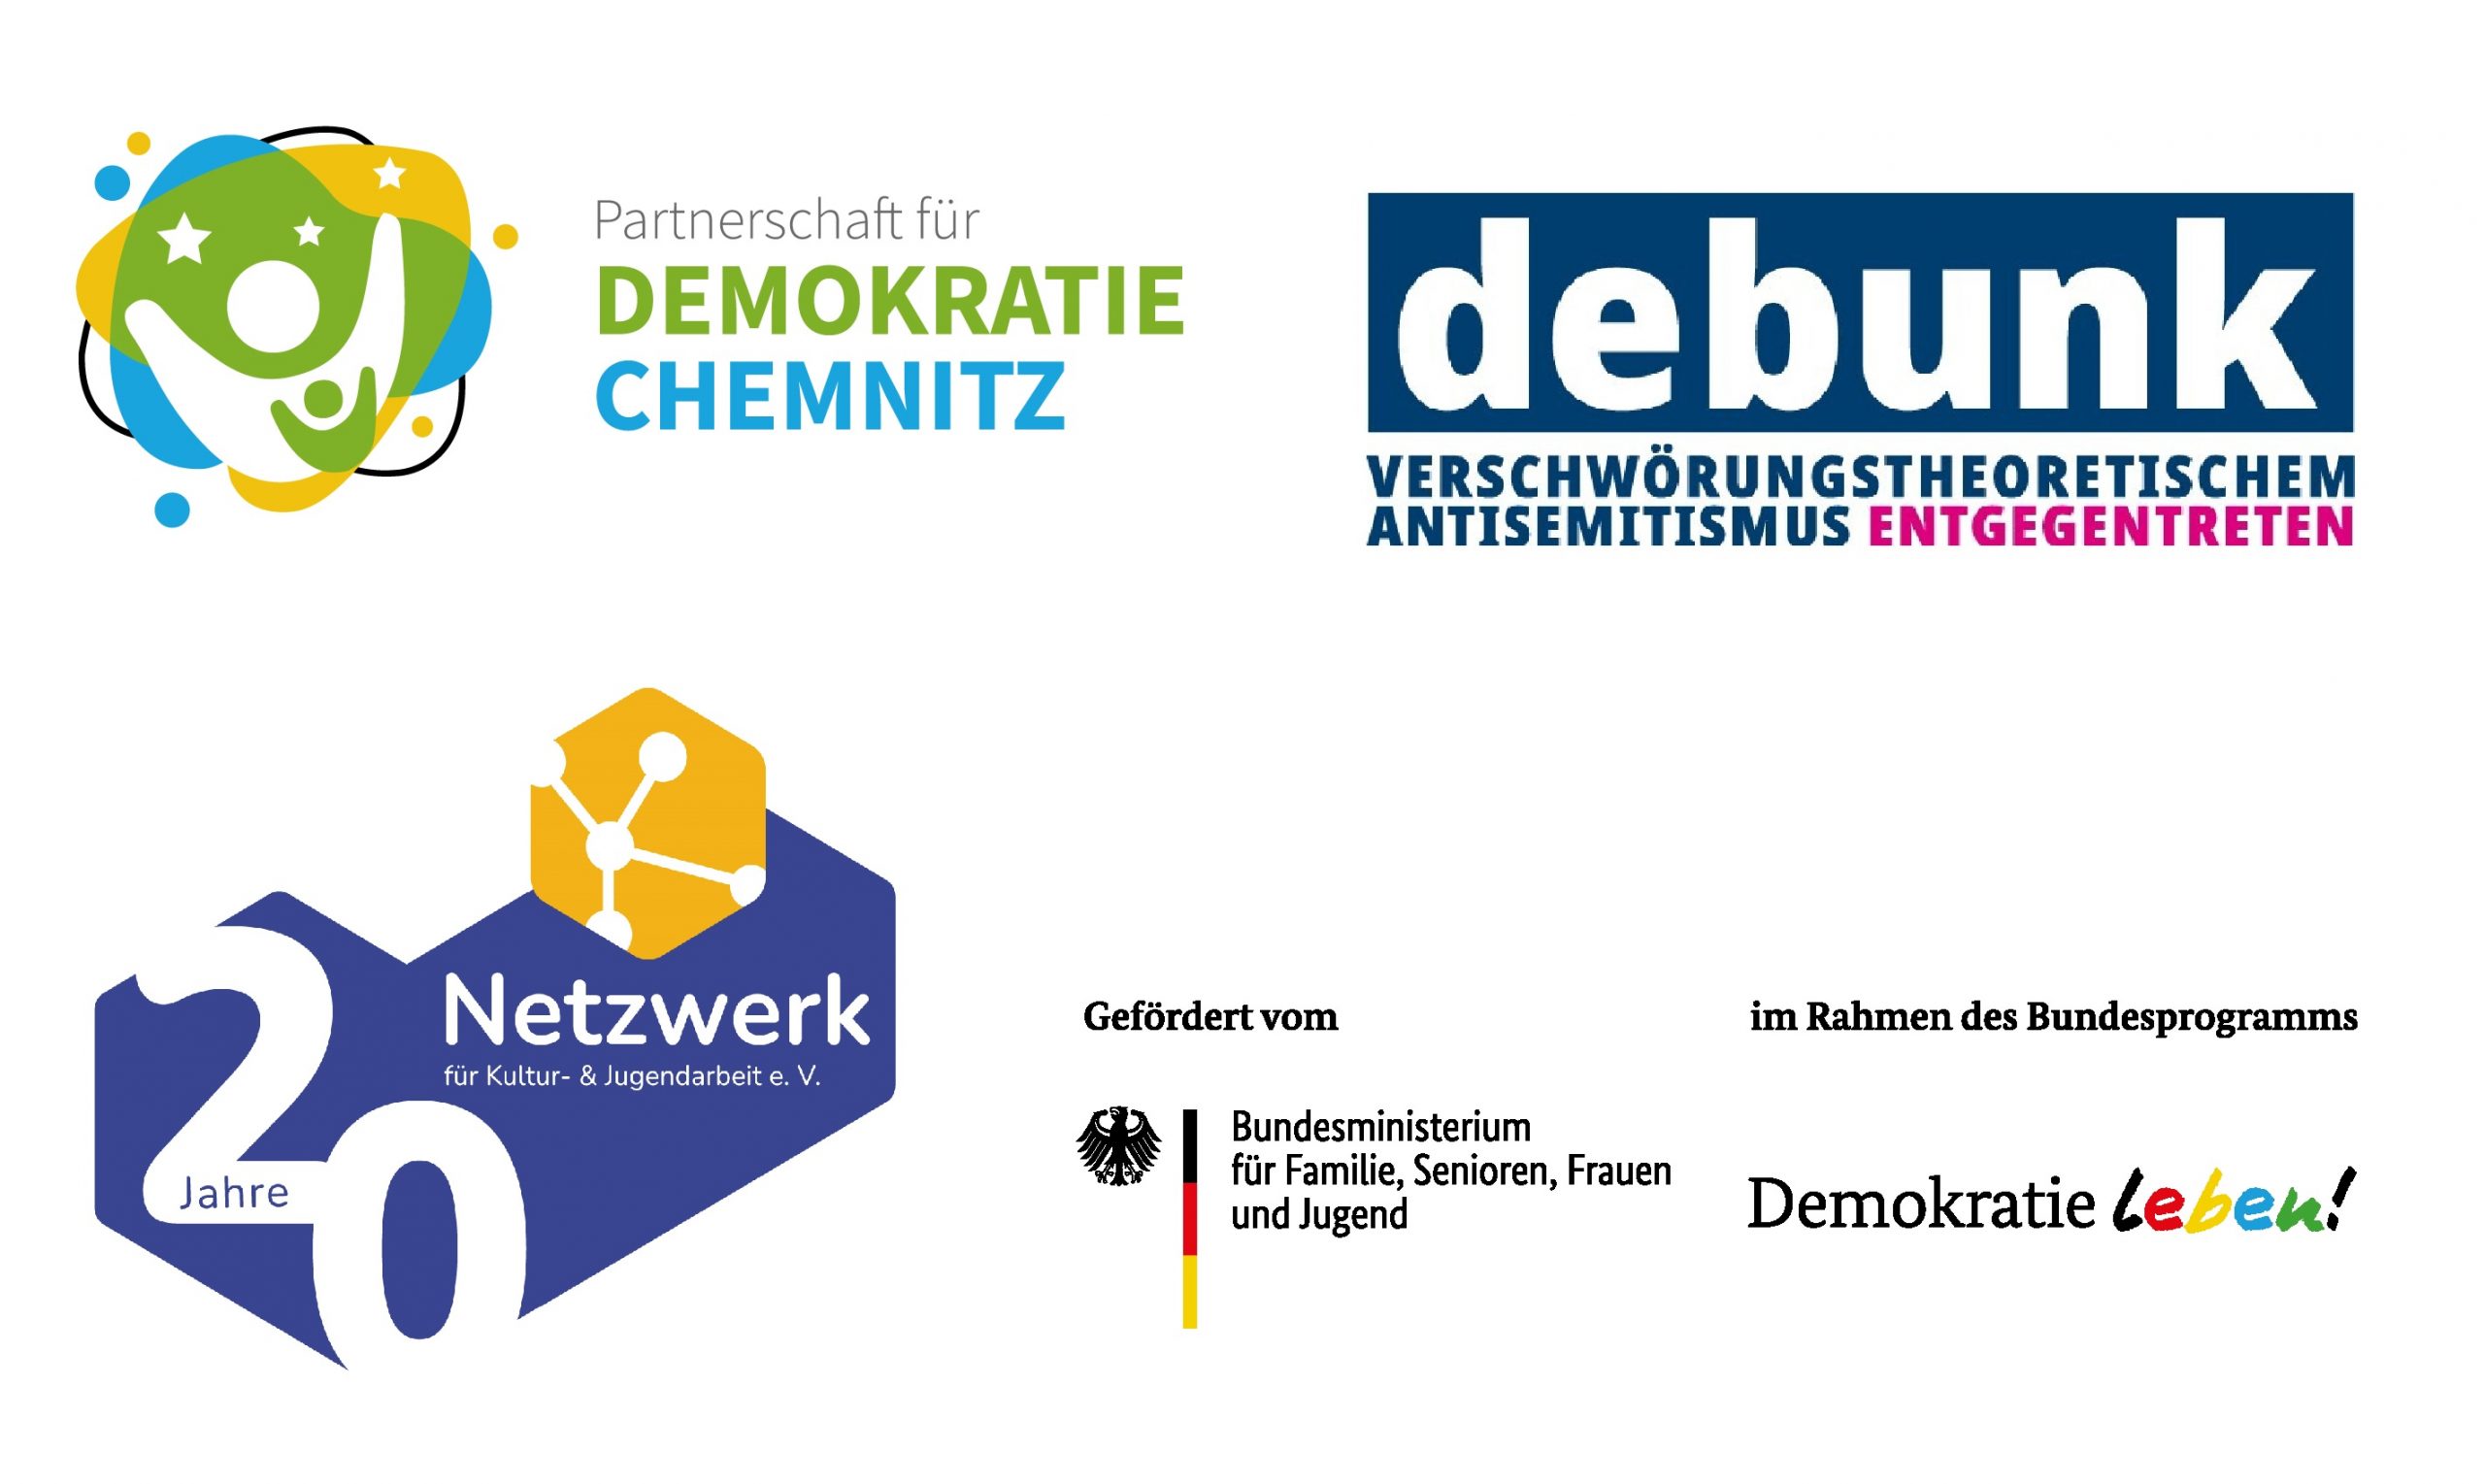 debunk_pfd_chemnitz_logo